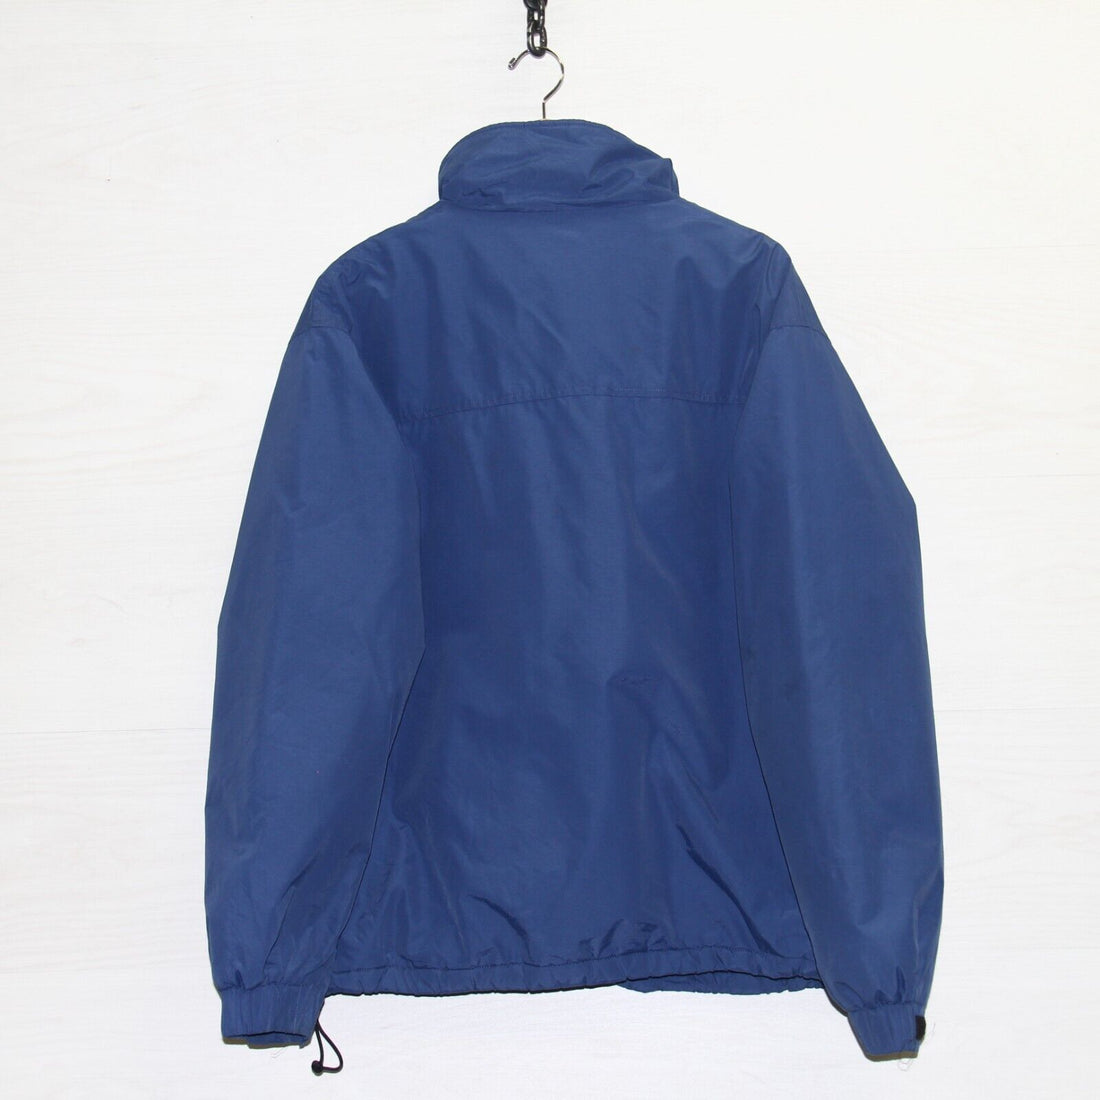 Vintage LL Bean Light Jacket Size Large Blue Fleece Lined